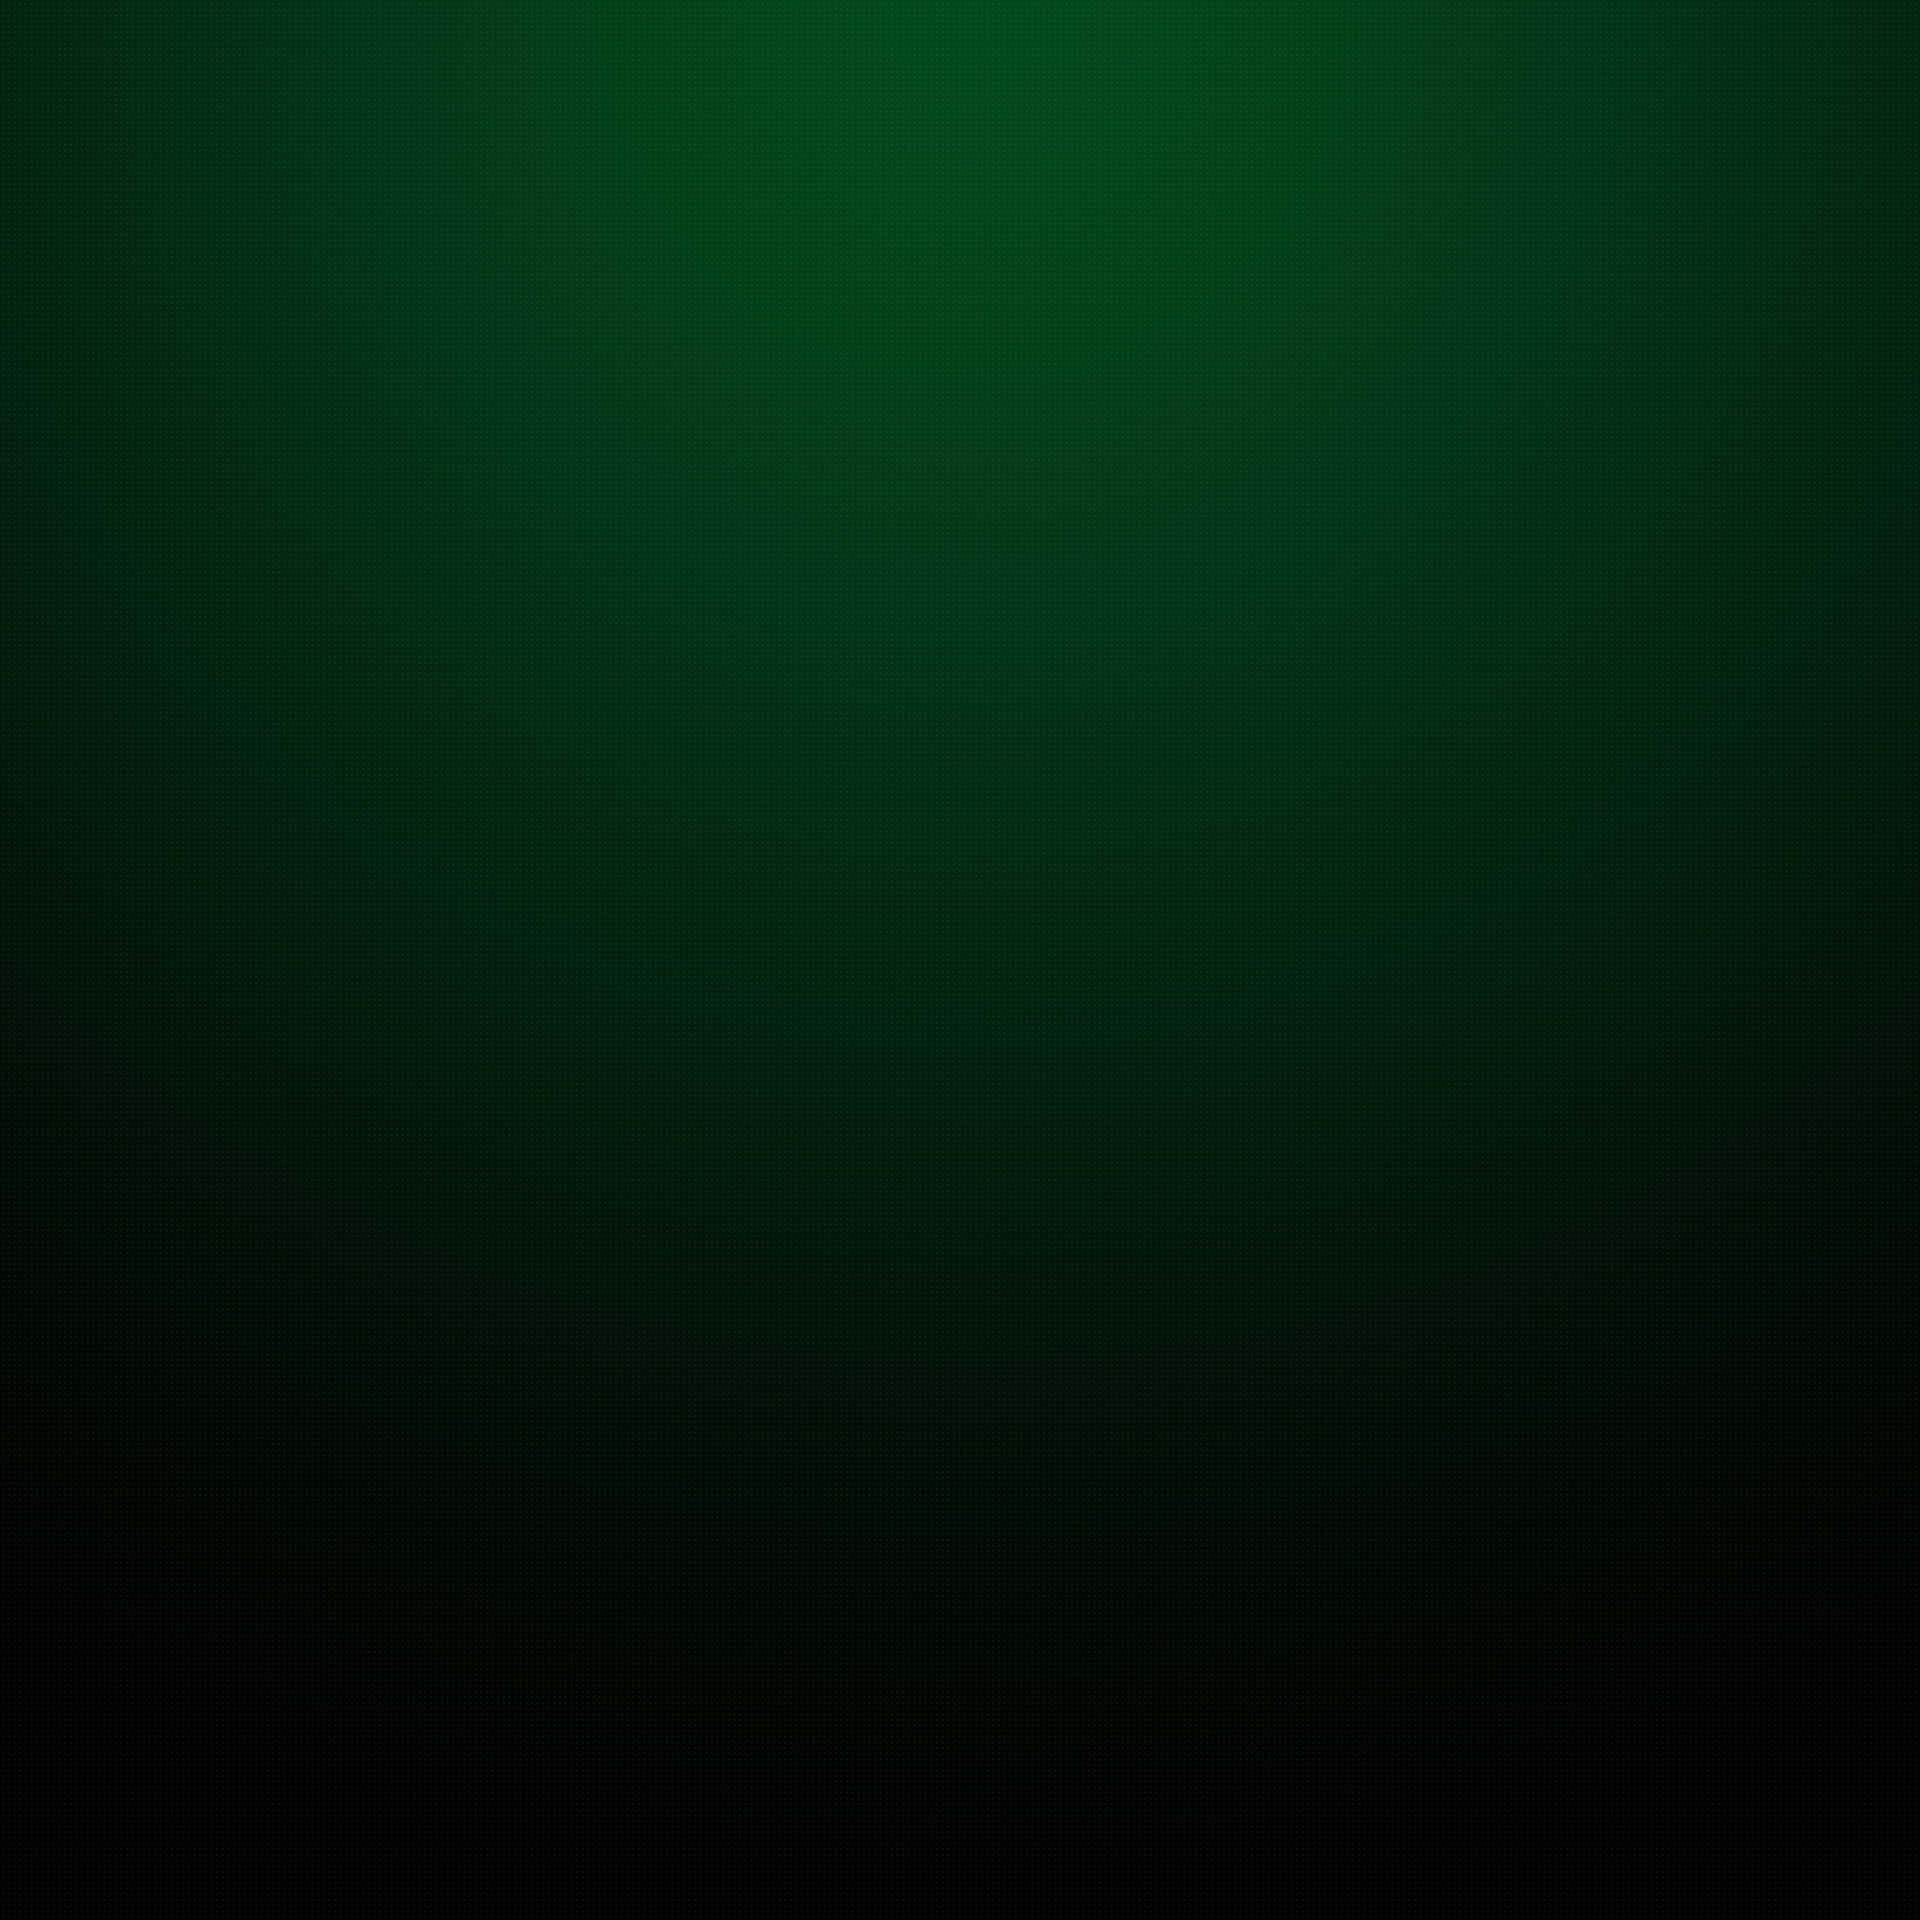 Gradientede Color Verde Oscuro Liso Que Se Desvanece Hacia El Negro. Fondo de pantalla